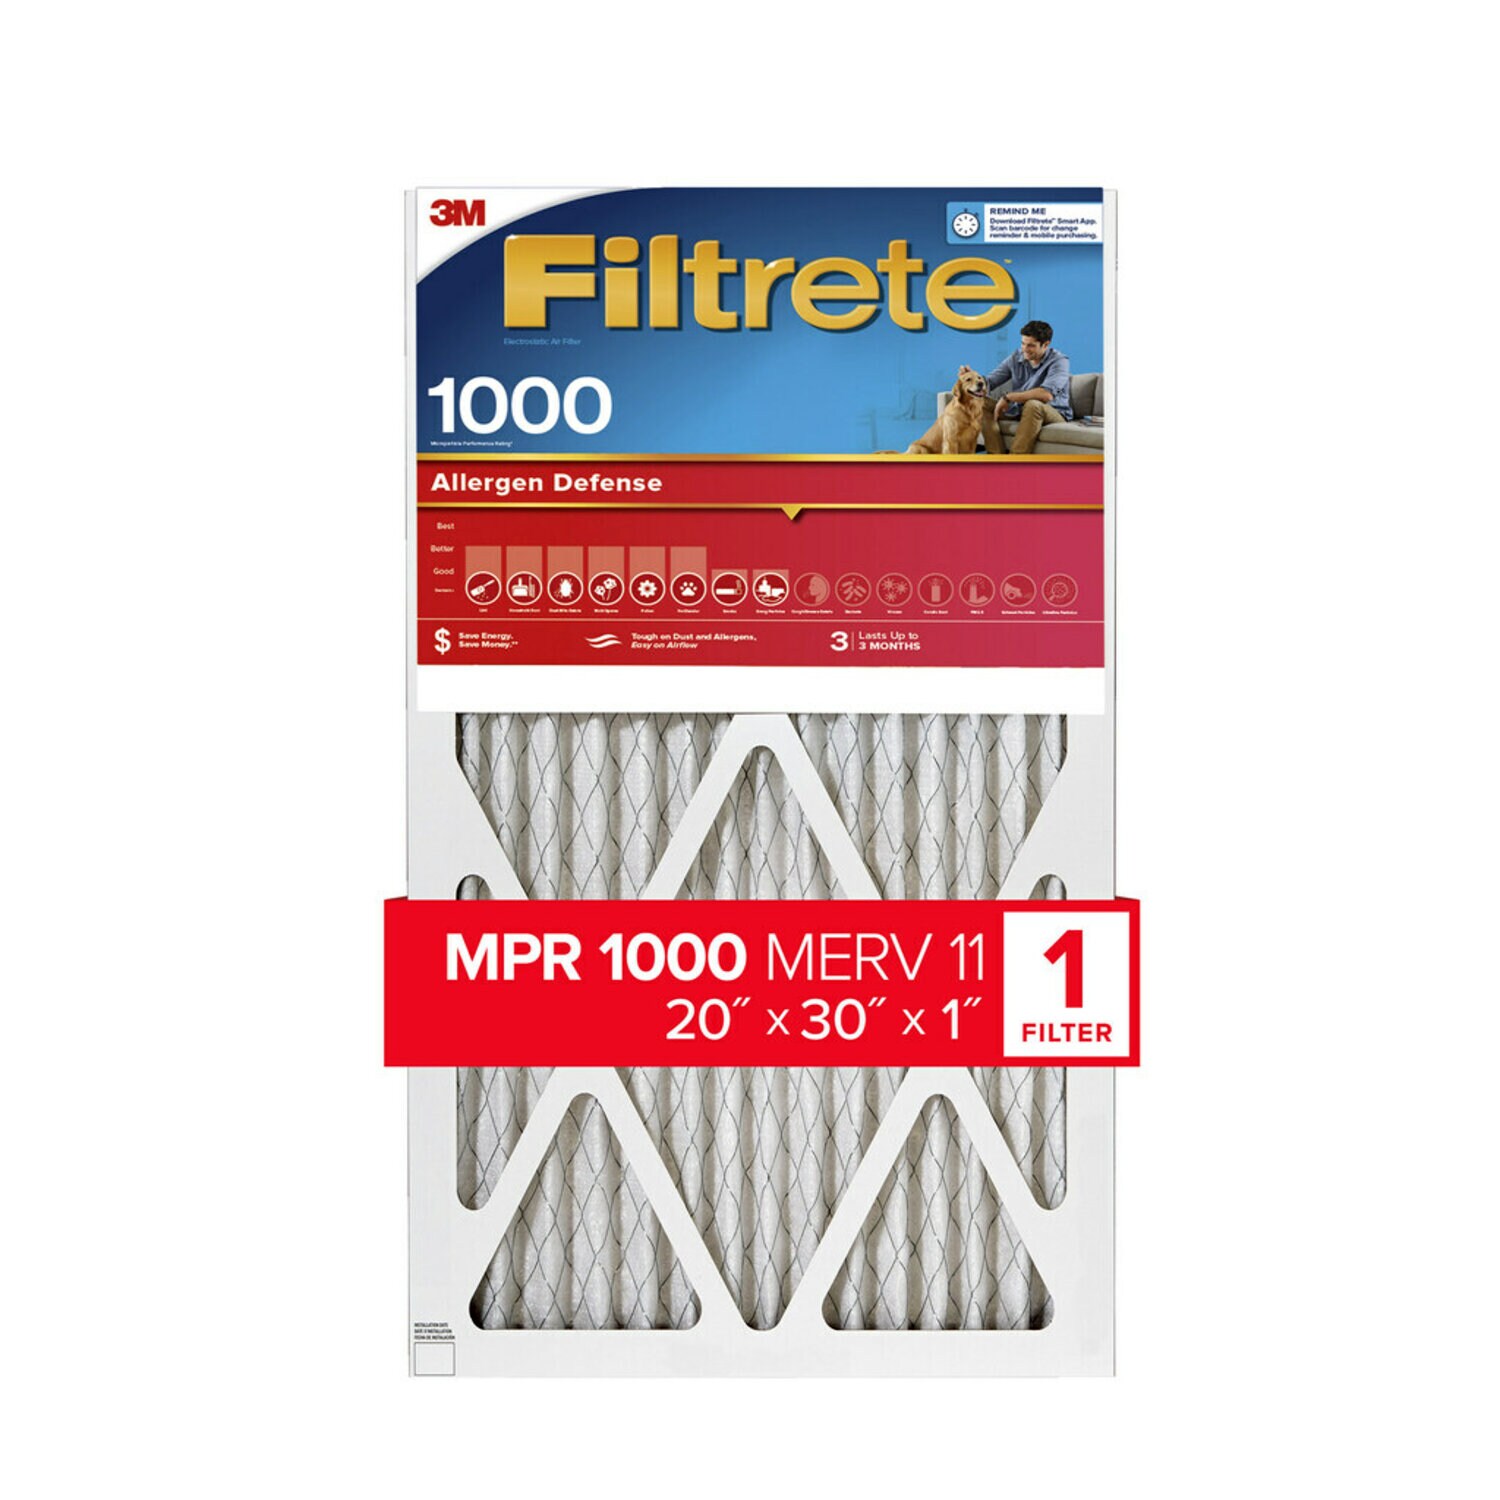 7100188738 - Filtrete Allergen Defense Air Filter, 1000 MPR, 9822-4, 20 in x 30 in x
1 in (50,8 cm x 76,2 cm x 2,5 cm)